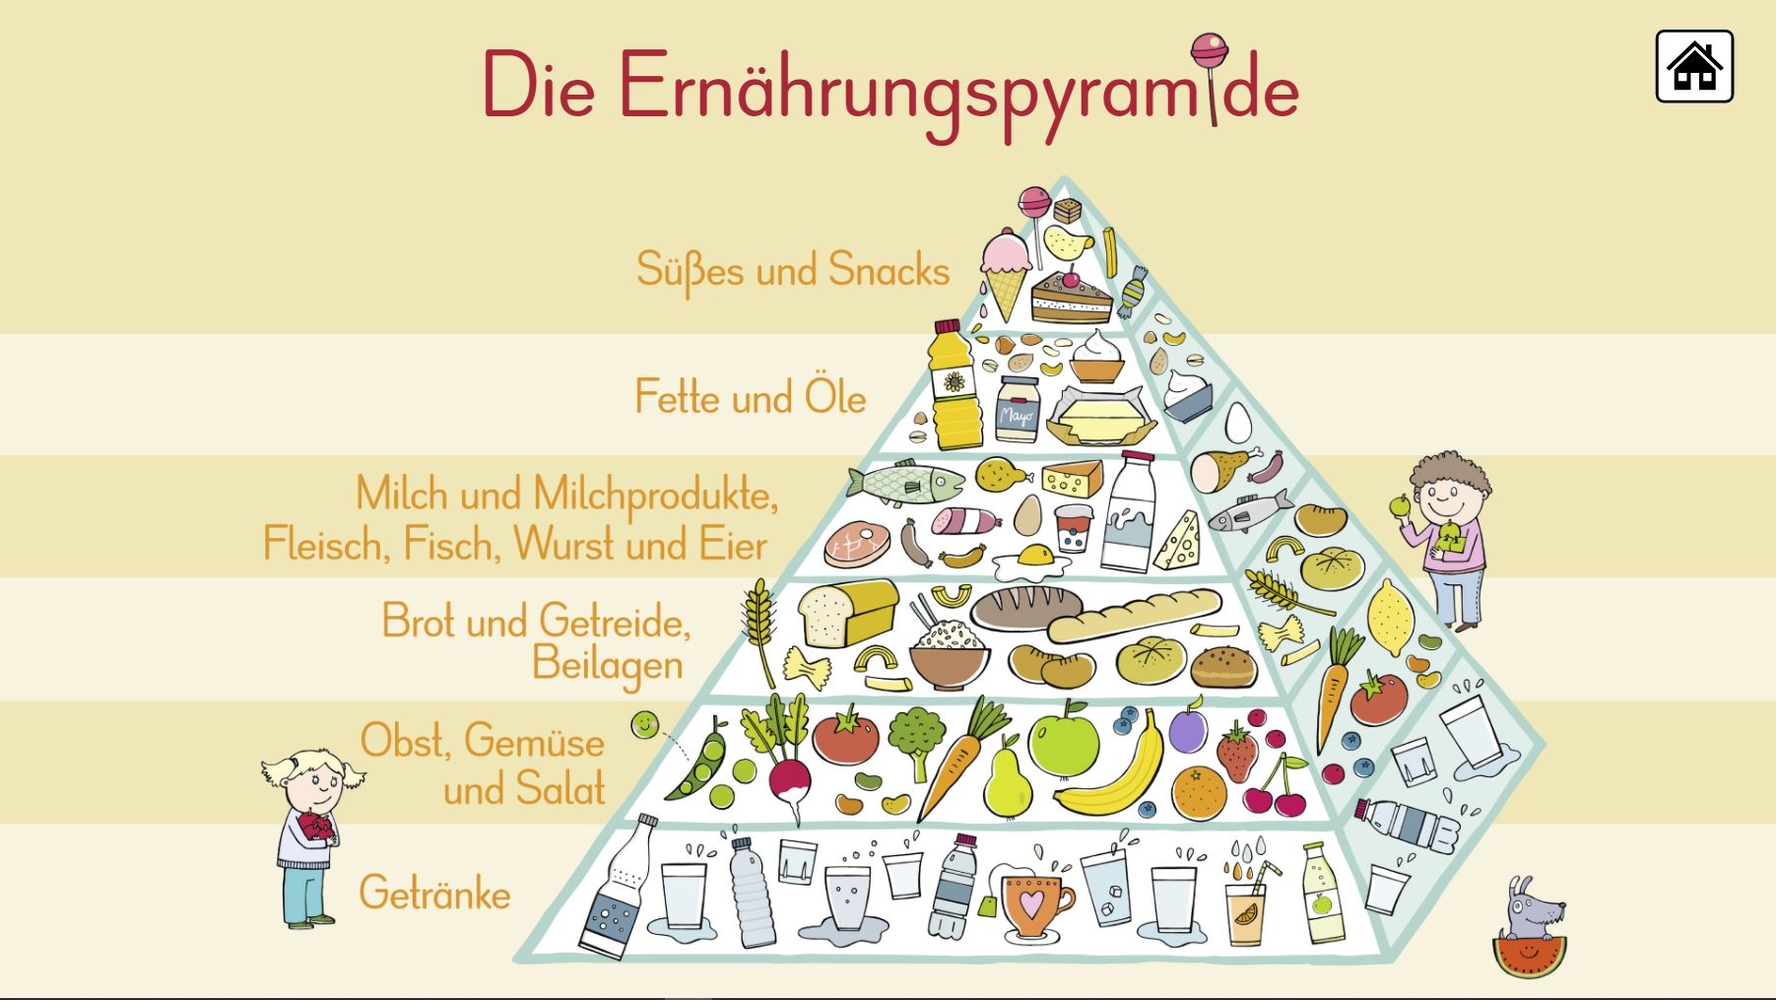 6 digitale Merk-Bilder für den Sachunterricht: Die Ernährungspyramide, Europa, Deutschland, Der Wasserkreislauf, Unsere Bäume, Unser Sonnensystem - Premium-Lizenz - Windows